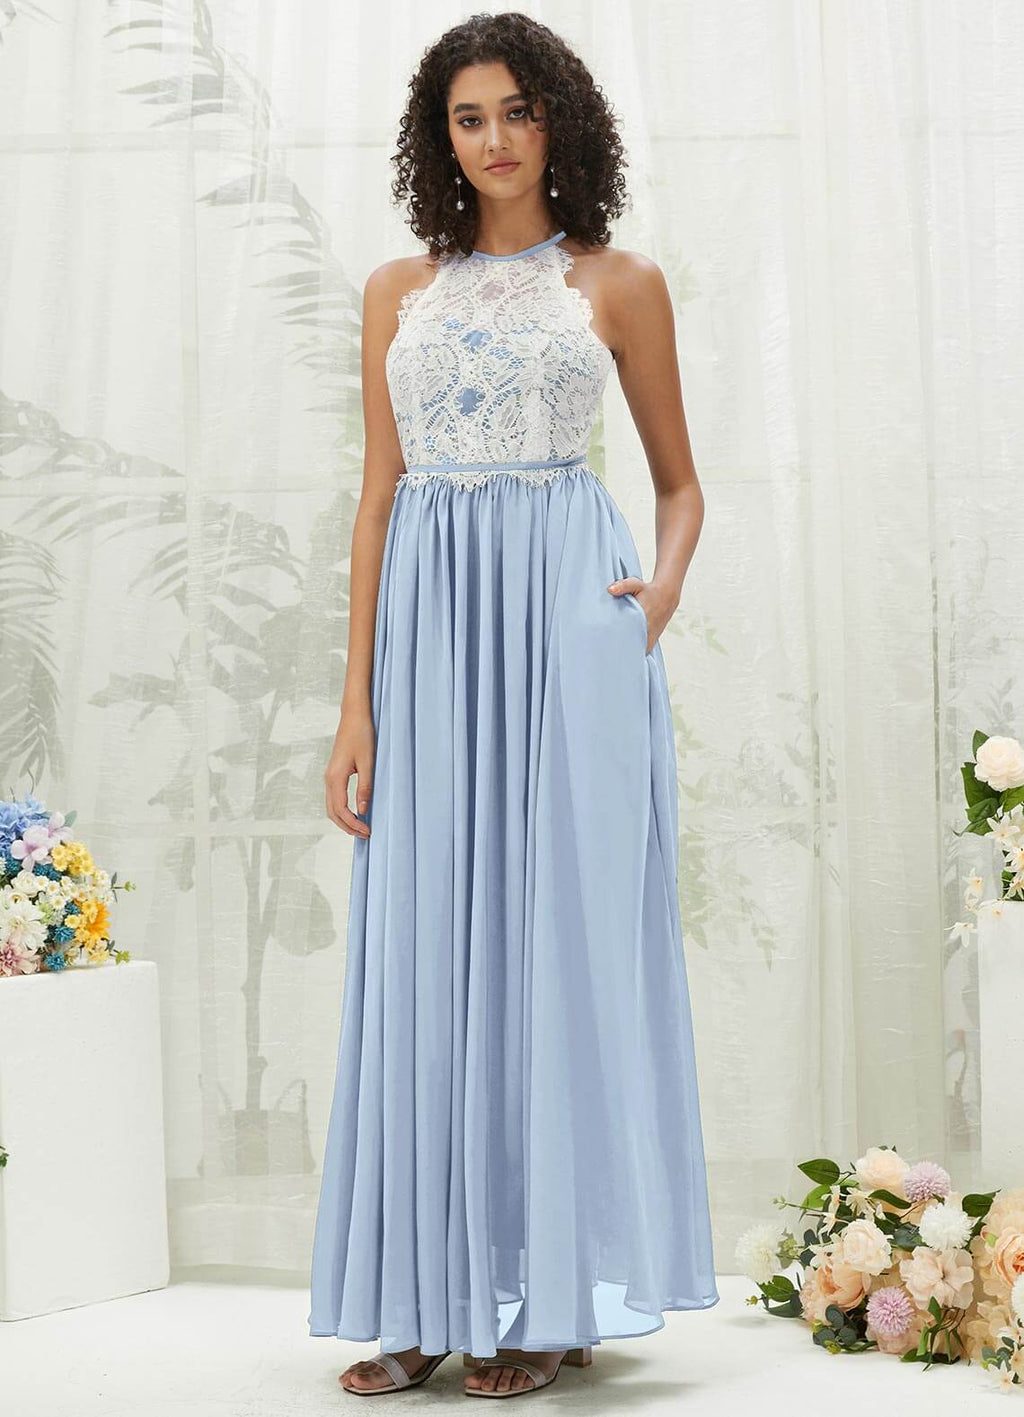 NZ Bridal Cornflower Blue Lace Top Chiffon Bridesmaid Dress TC0426 Heidi a